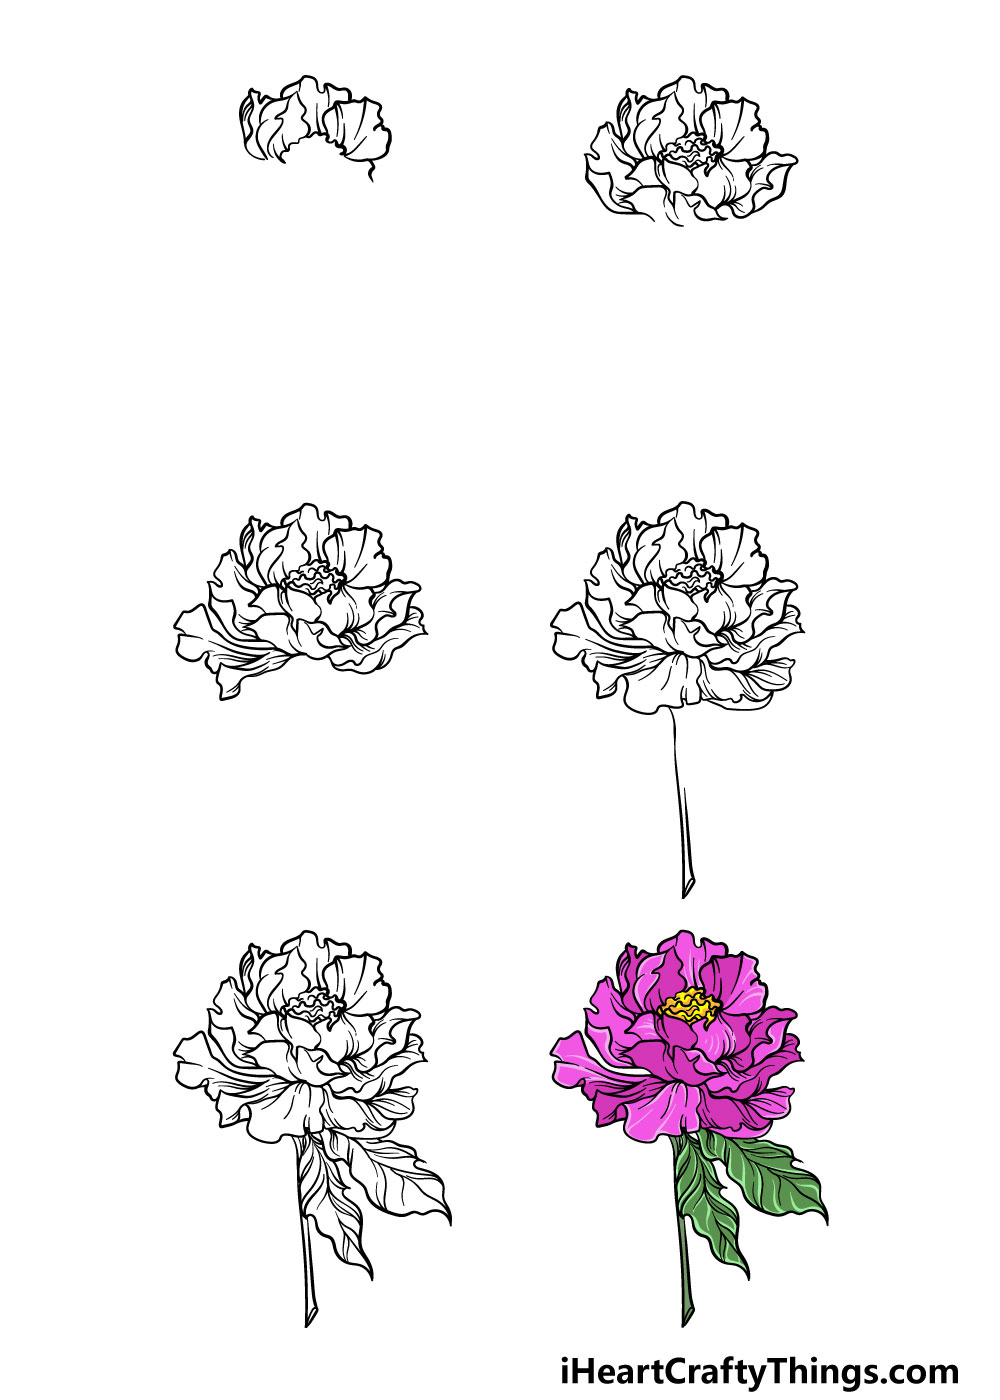 Tranh Vẽ Hoa Lá Đơn Giản Dành Cho Bé Vẽ Hoa Lá Đơn Giản Vẽ Hoa Đẹp